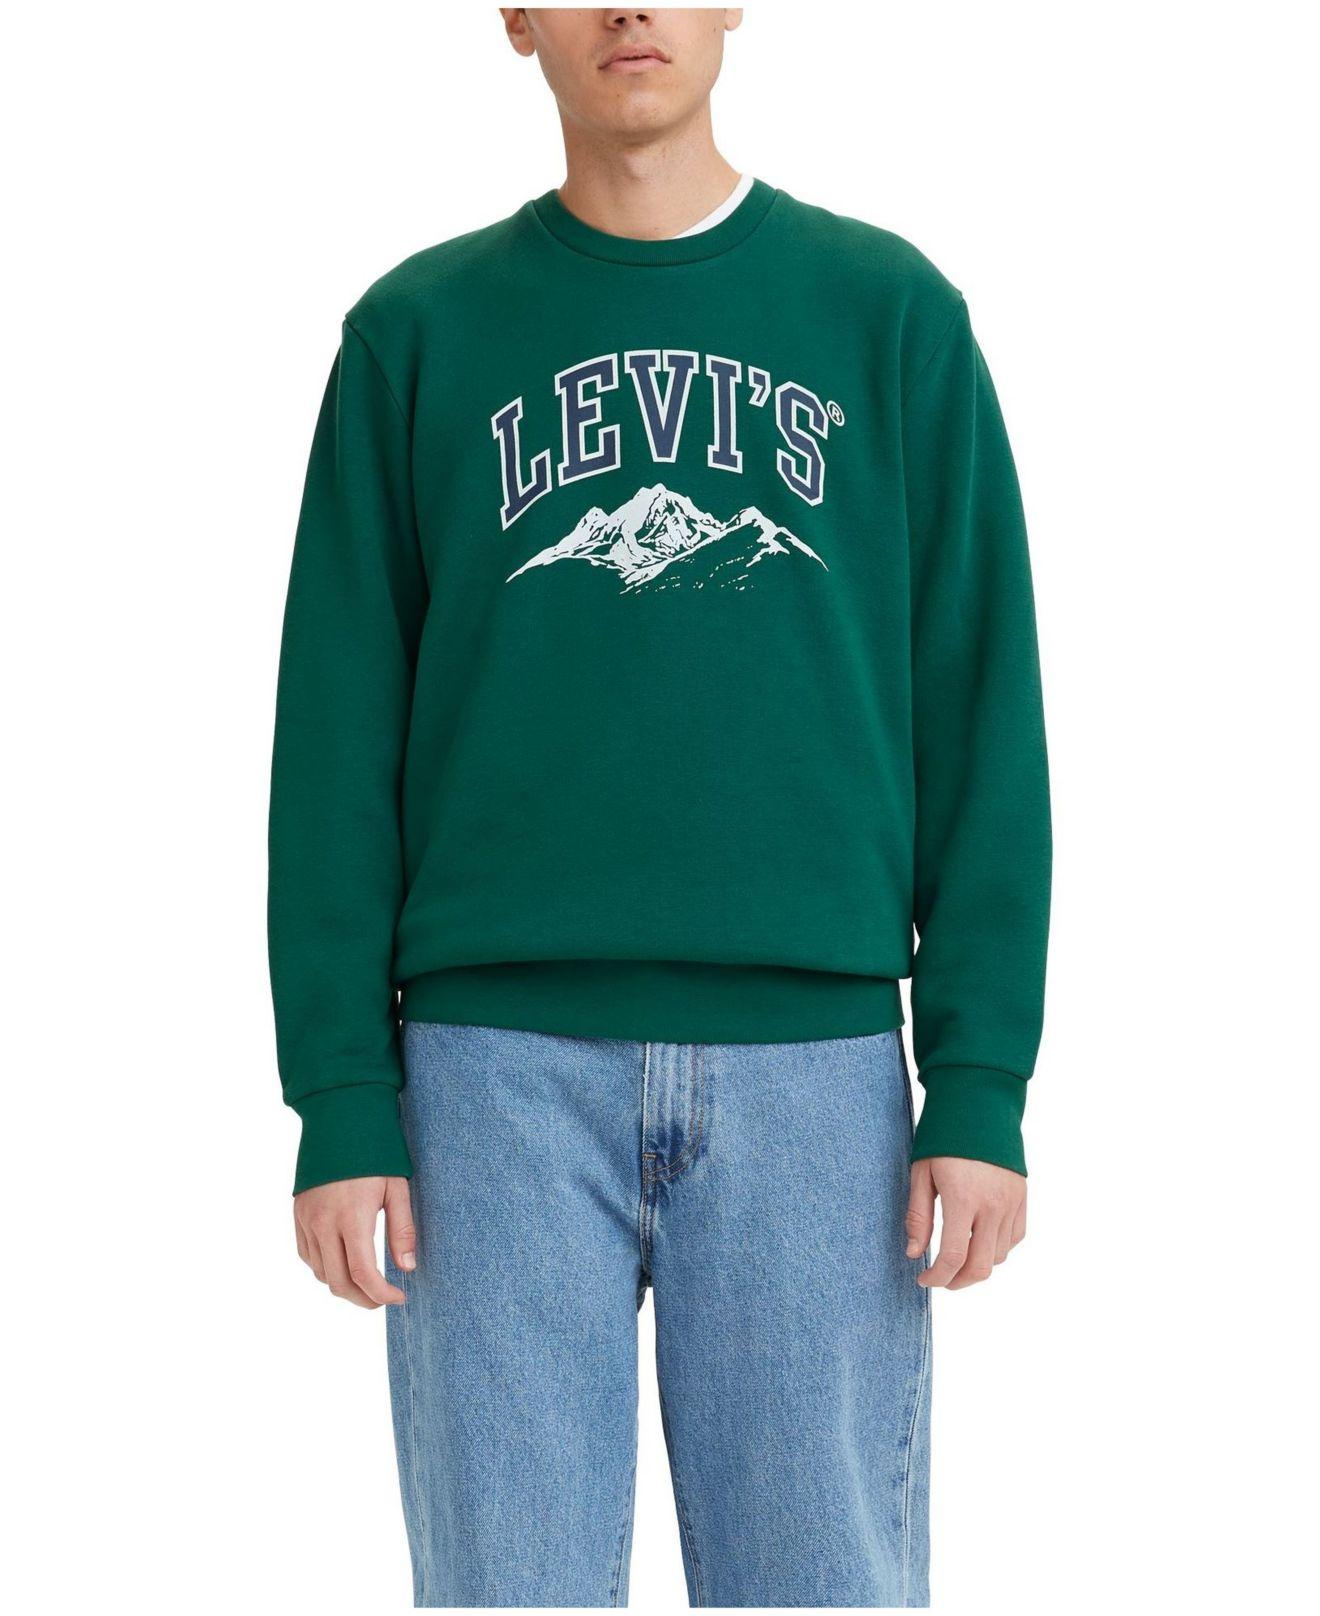 Introducir 67+ imagen levi’s sweatshirt green